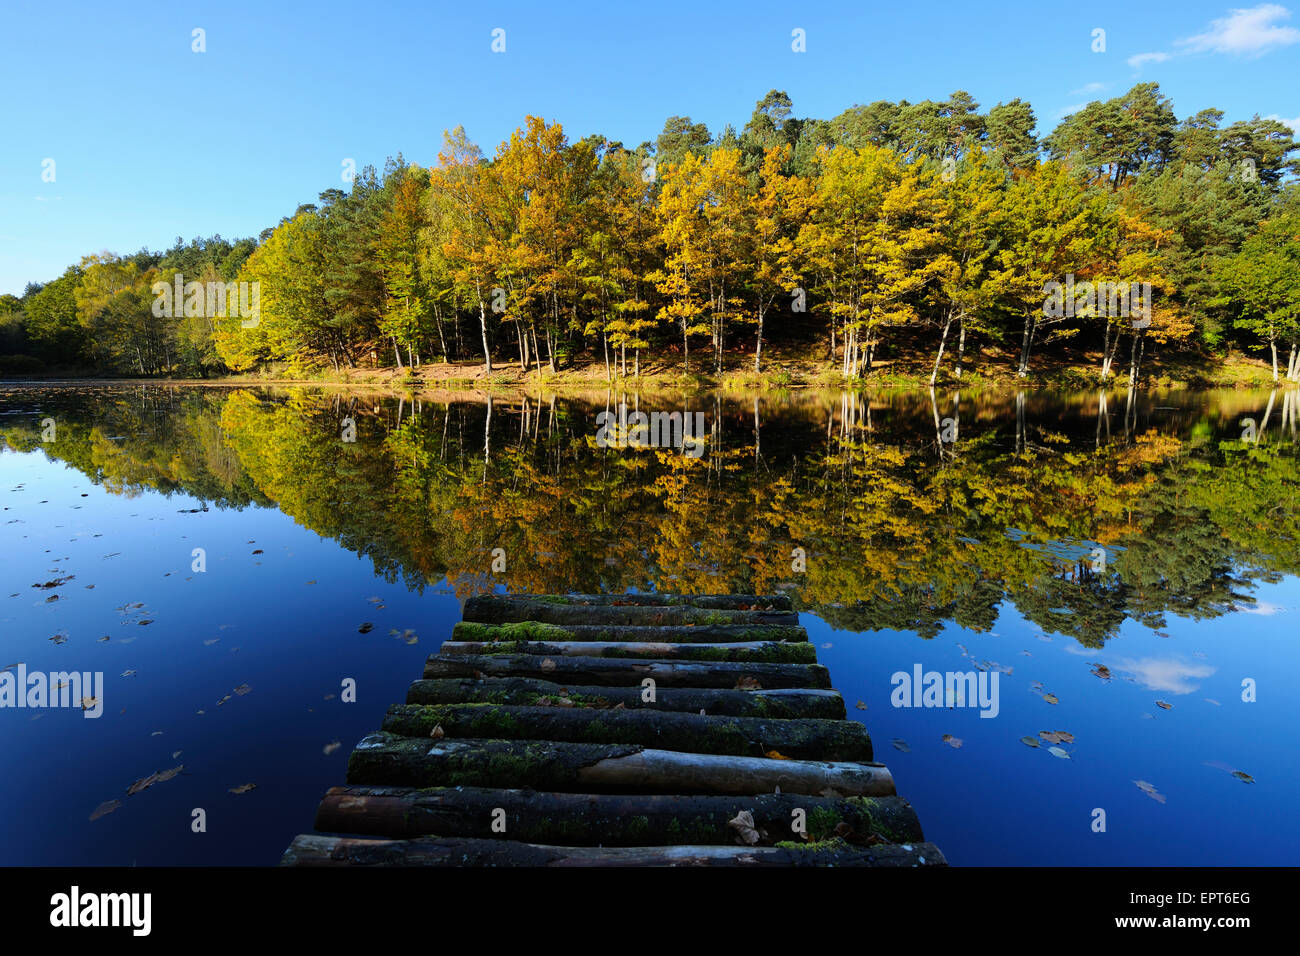 Il lago con l'autunno alberi colorati e pontile in legno, Stuedenbach, Eppenbrunn, Pfaelzerwald, Renania-Palatinato, Germania Foto Stock